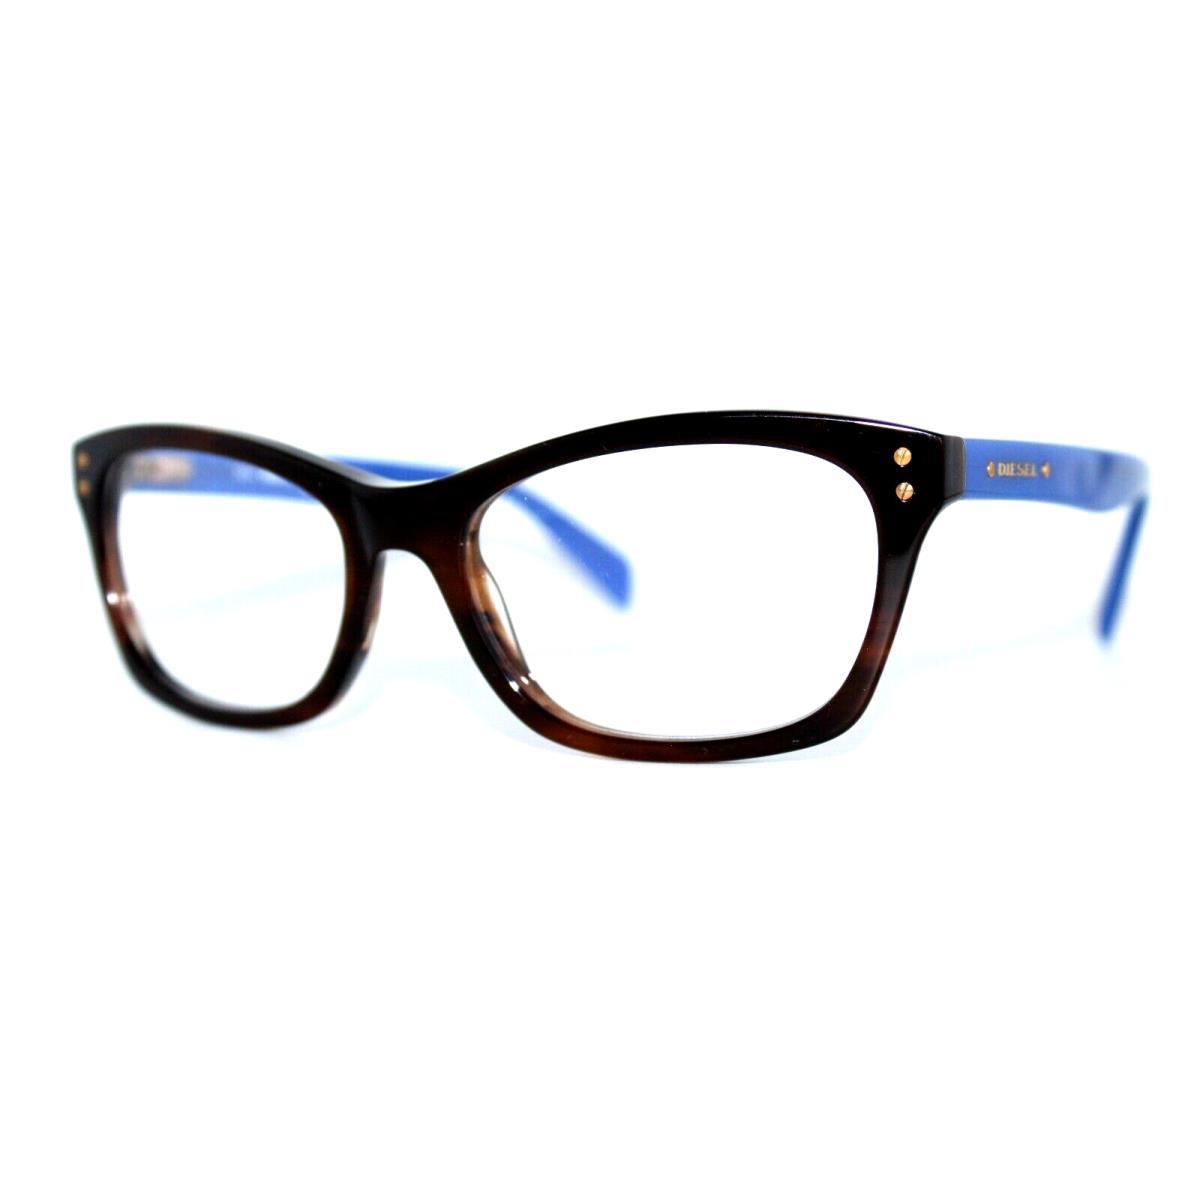 Diesel DL5073-1 050 Havana Eyeglasses Frames 53-17-140MM W/case RX